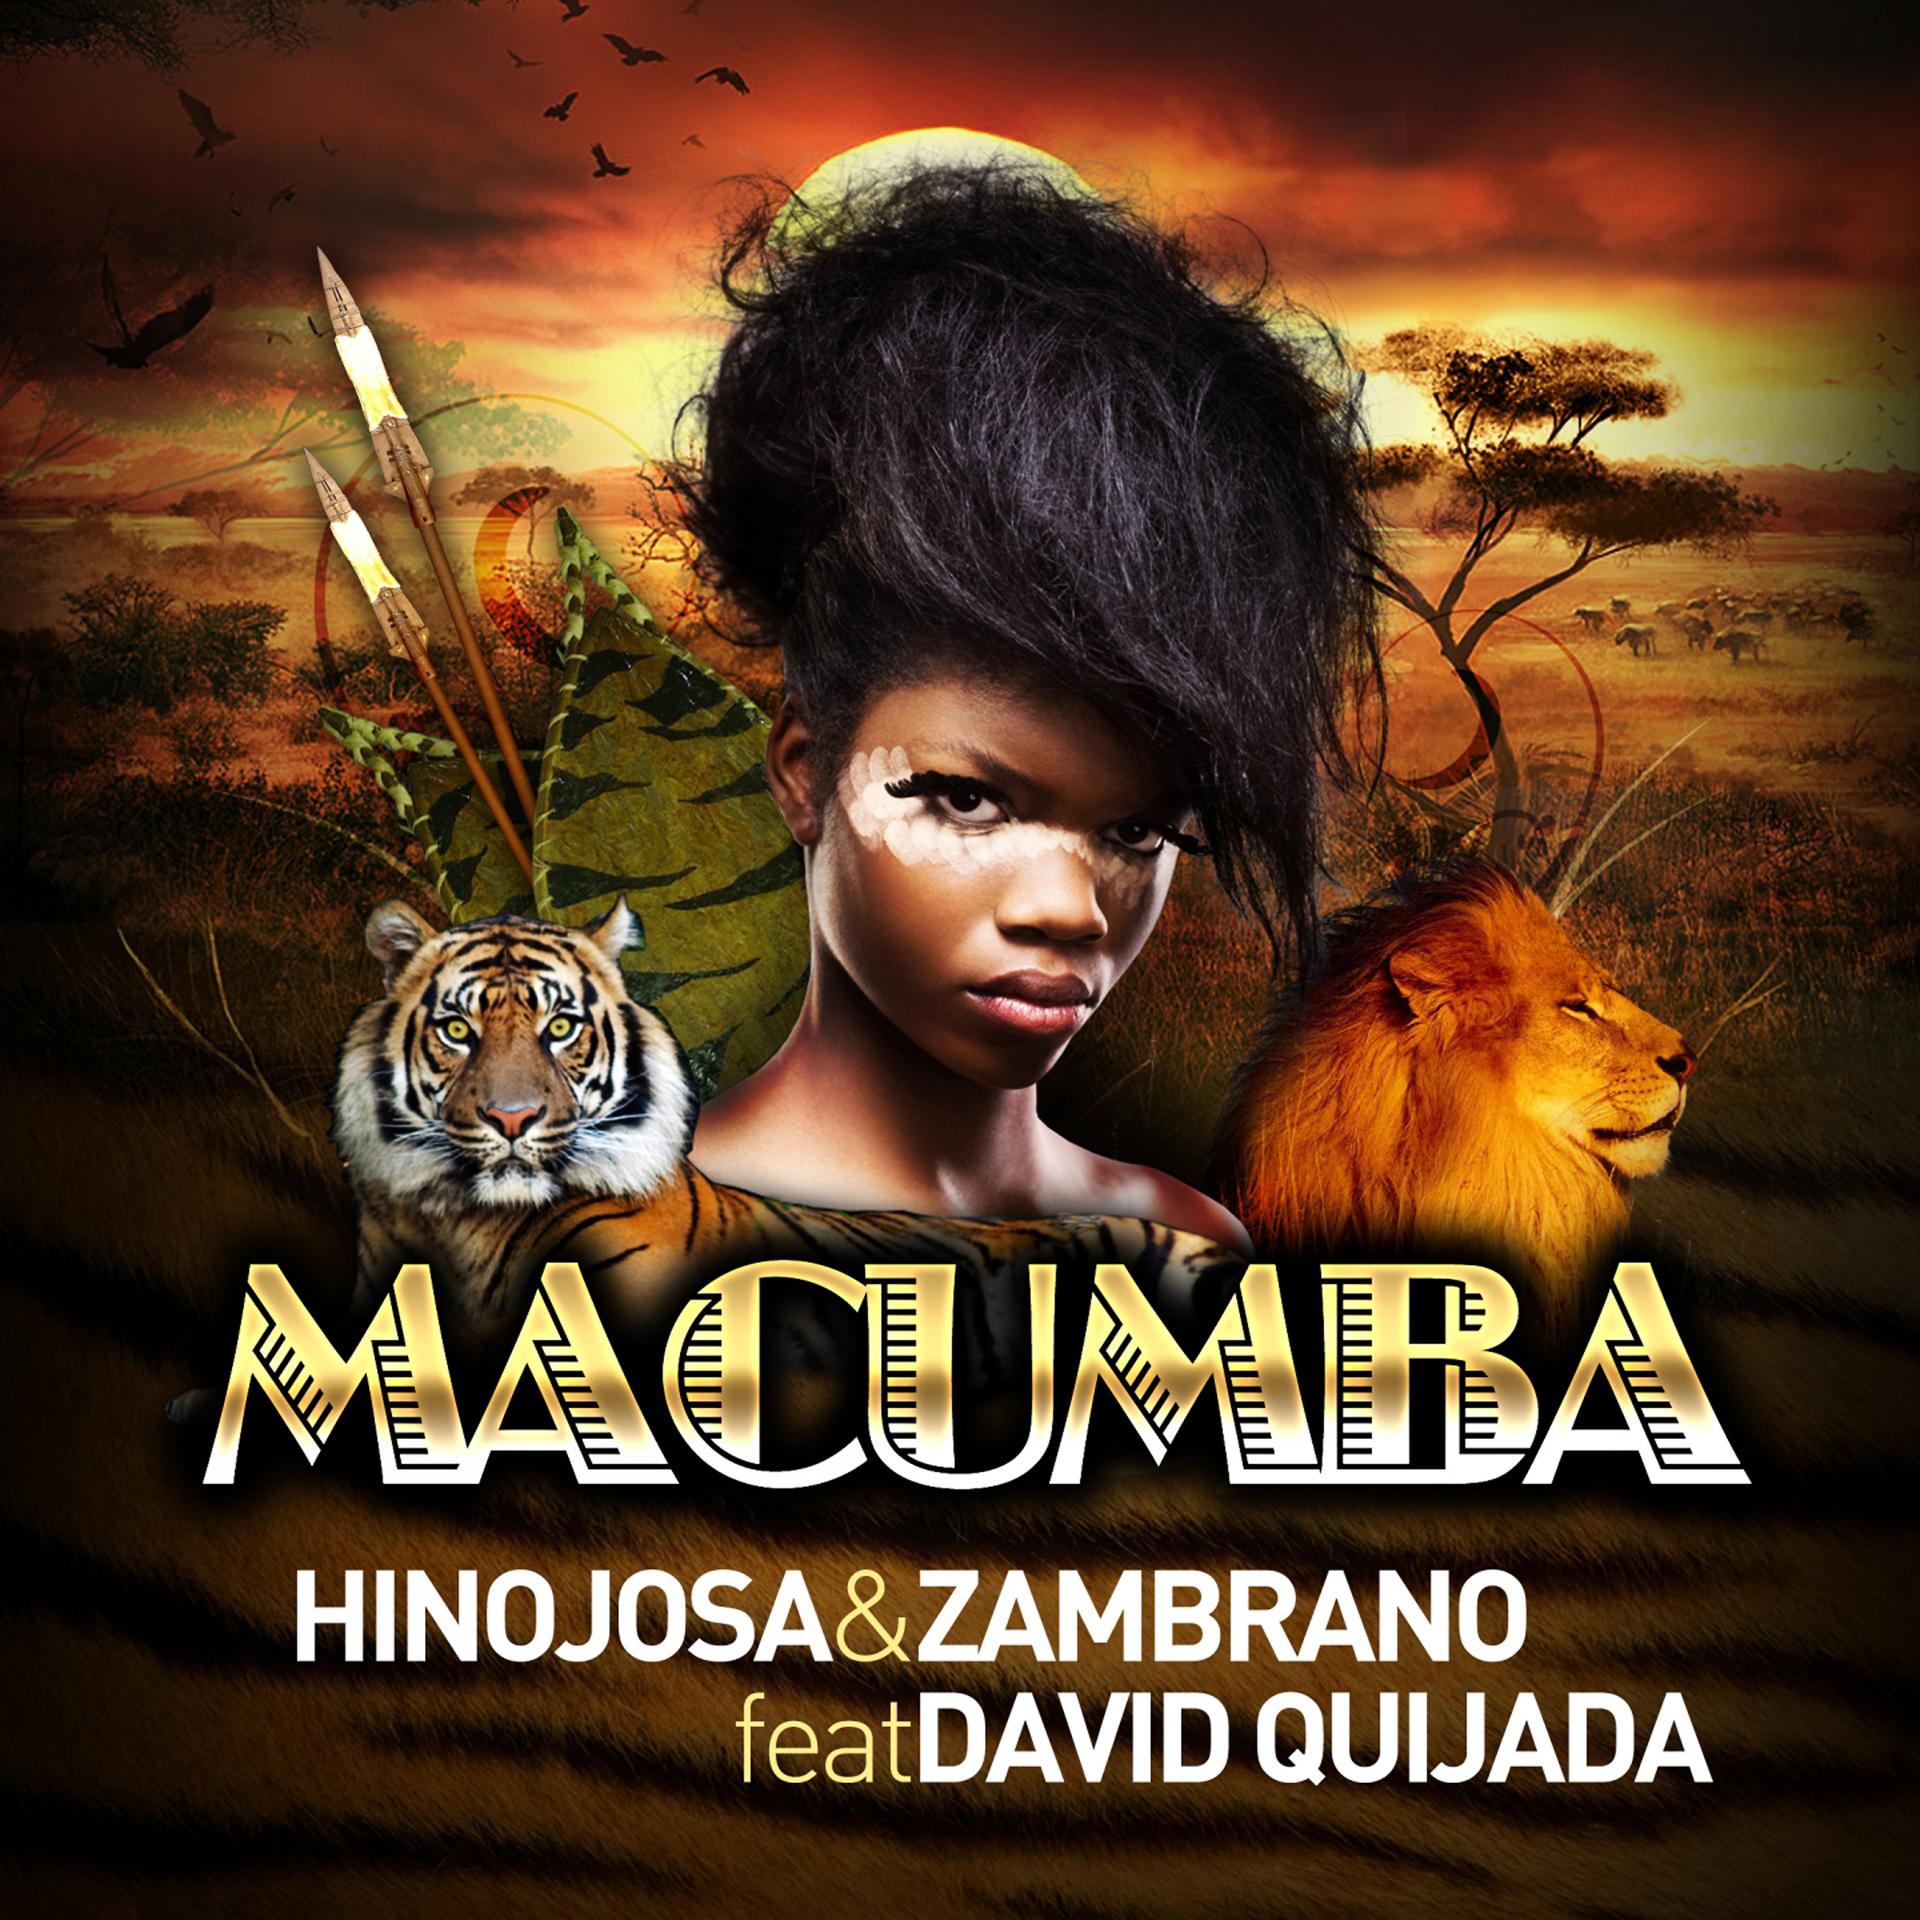 Постер альбома Macumba